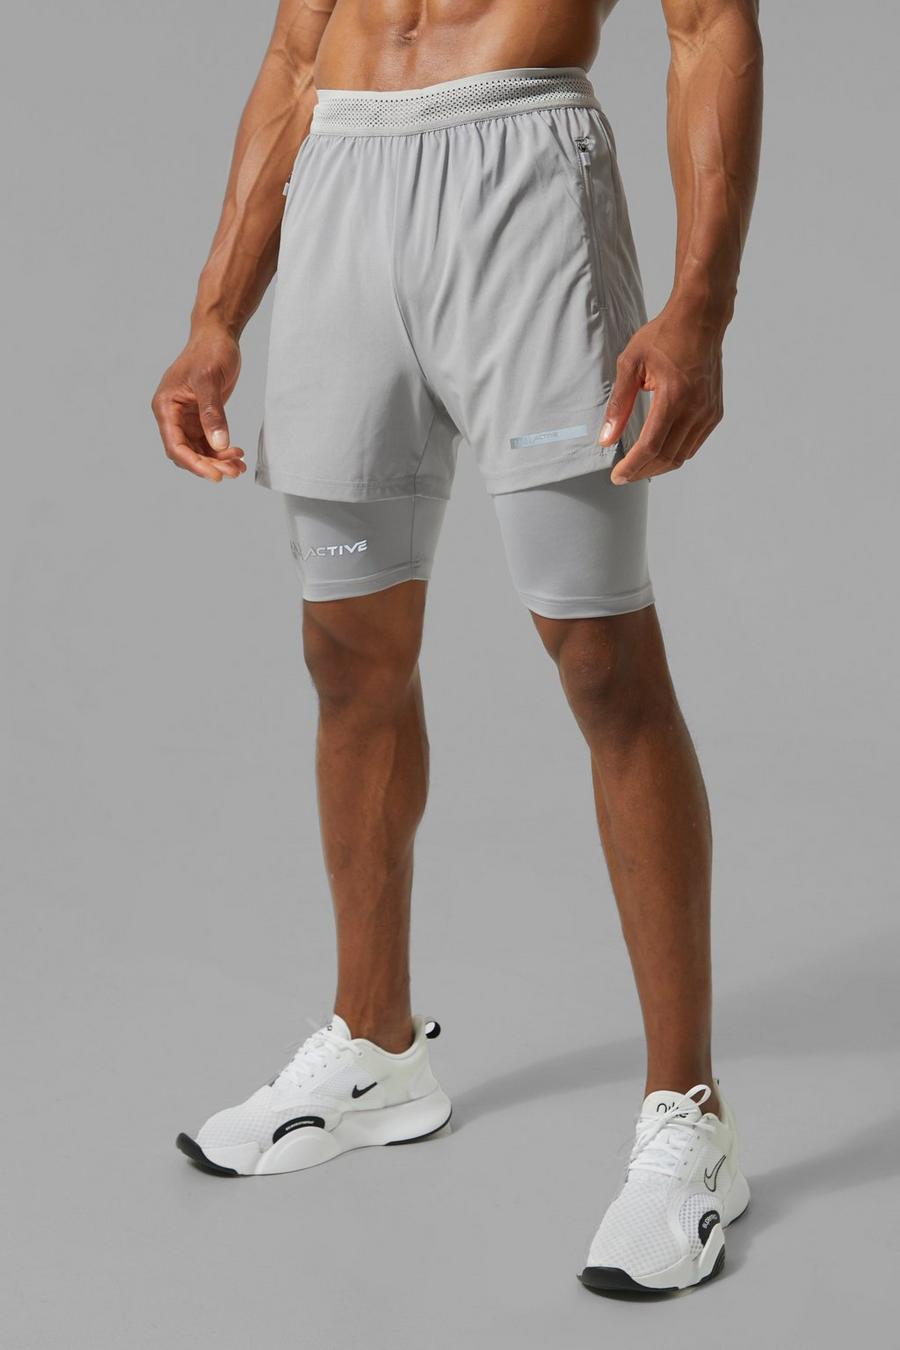 Pantaloncini Man Active 2 in 1 con stampa e spacco sul fondo, Grey grigio